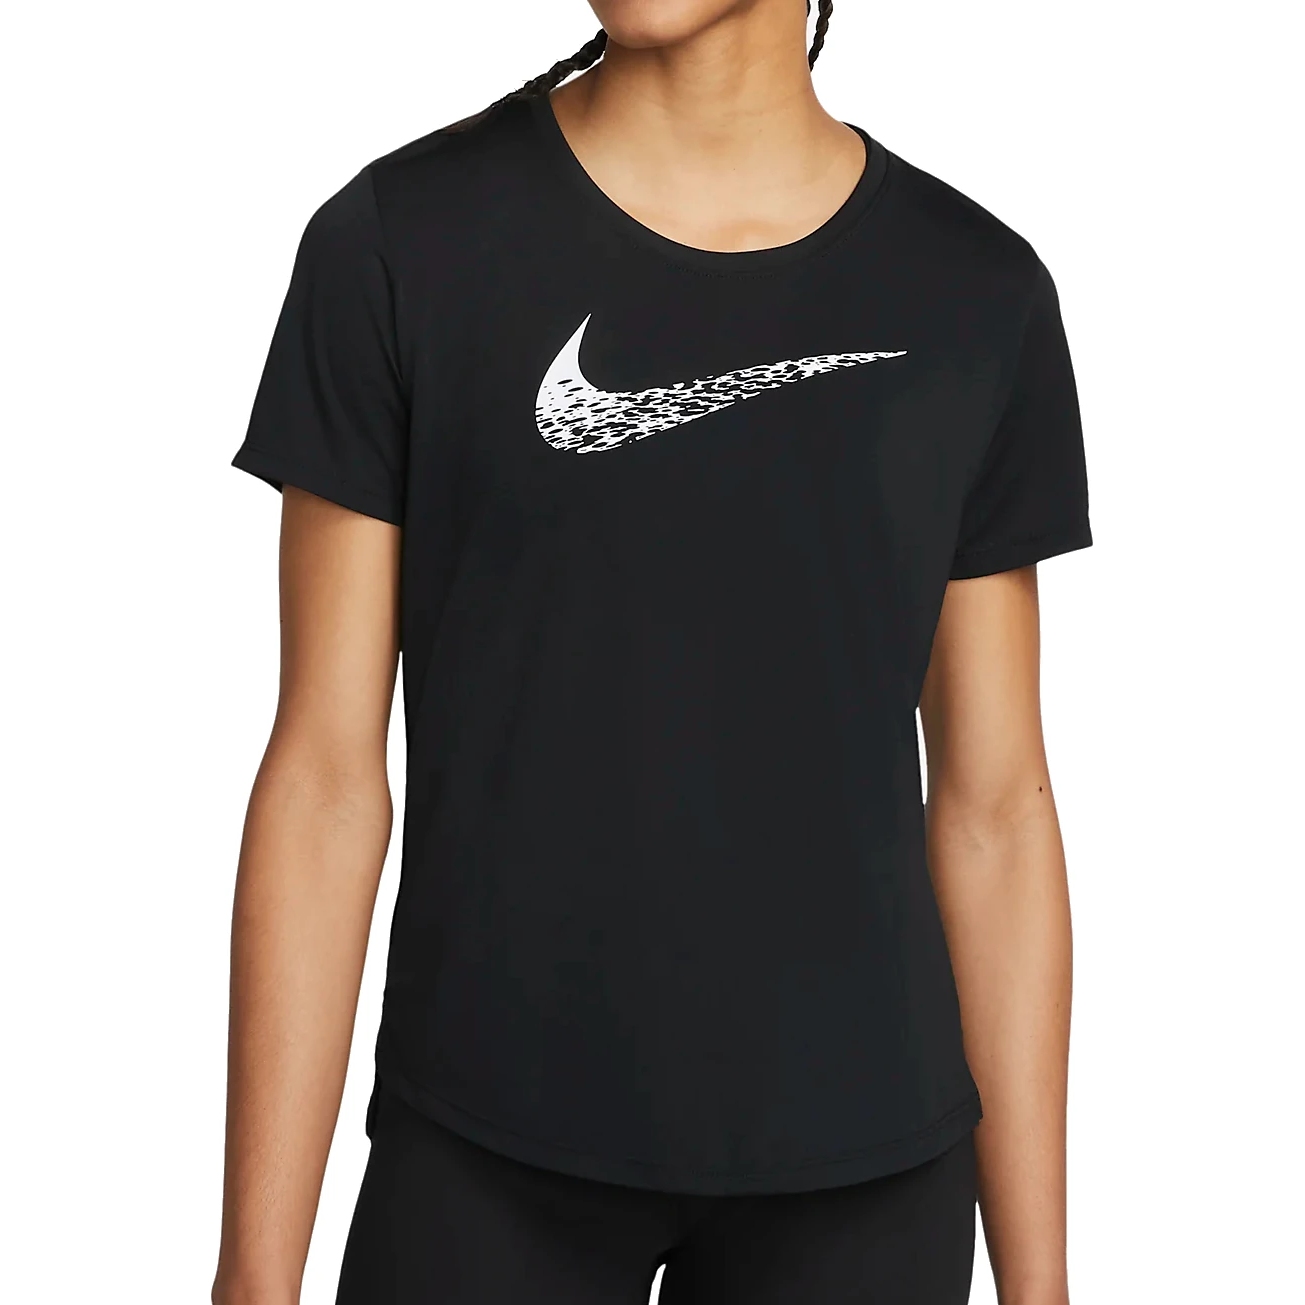 Productfoto van Nike Swoosh Hardloopshirt Dames - black/white DM7777-010